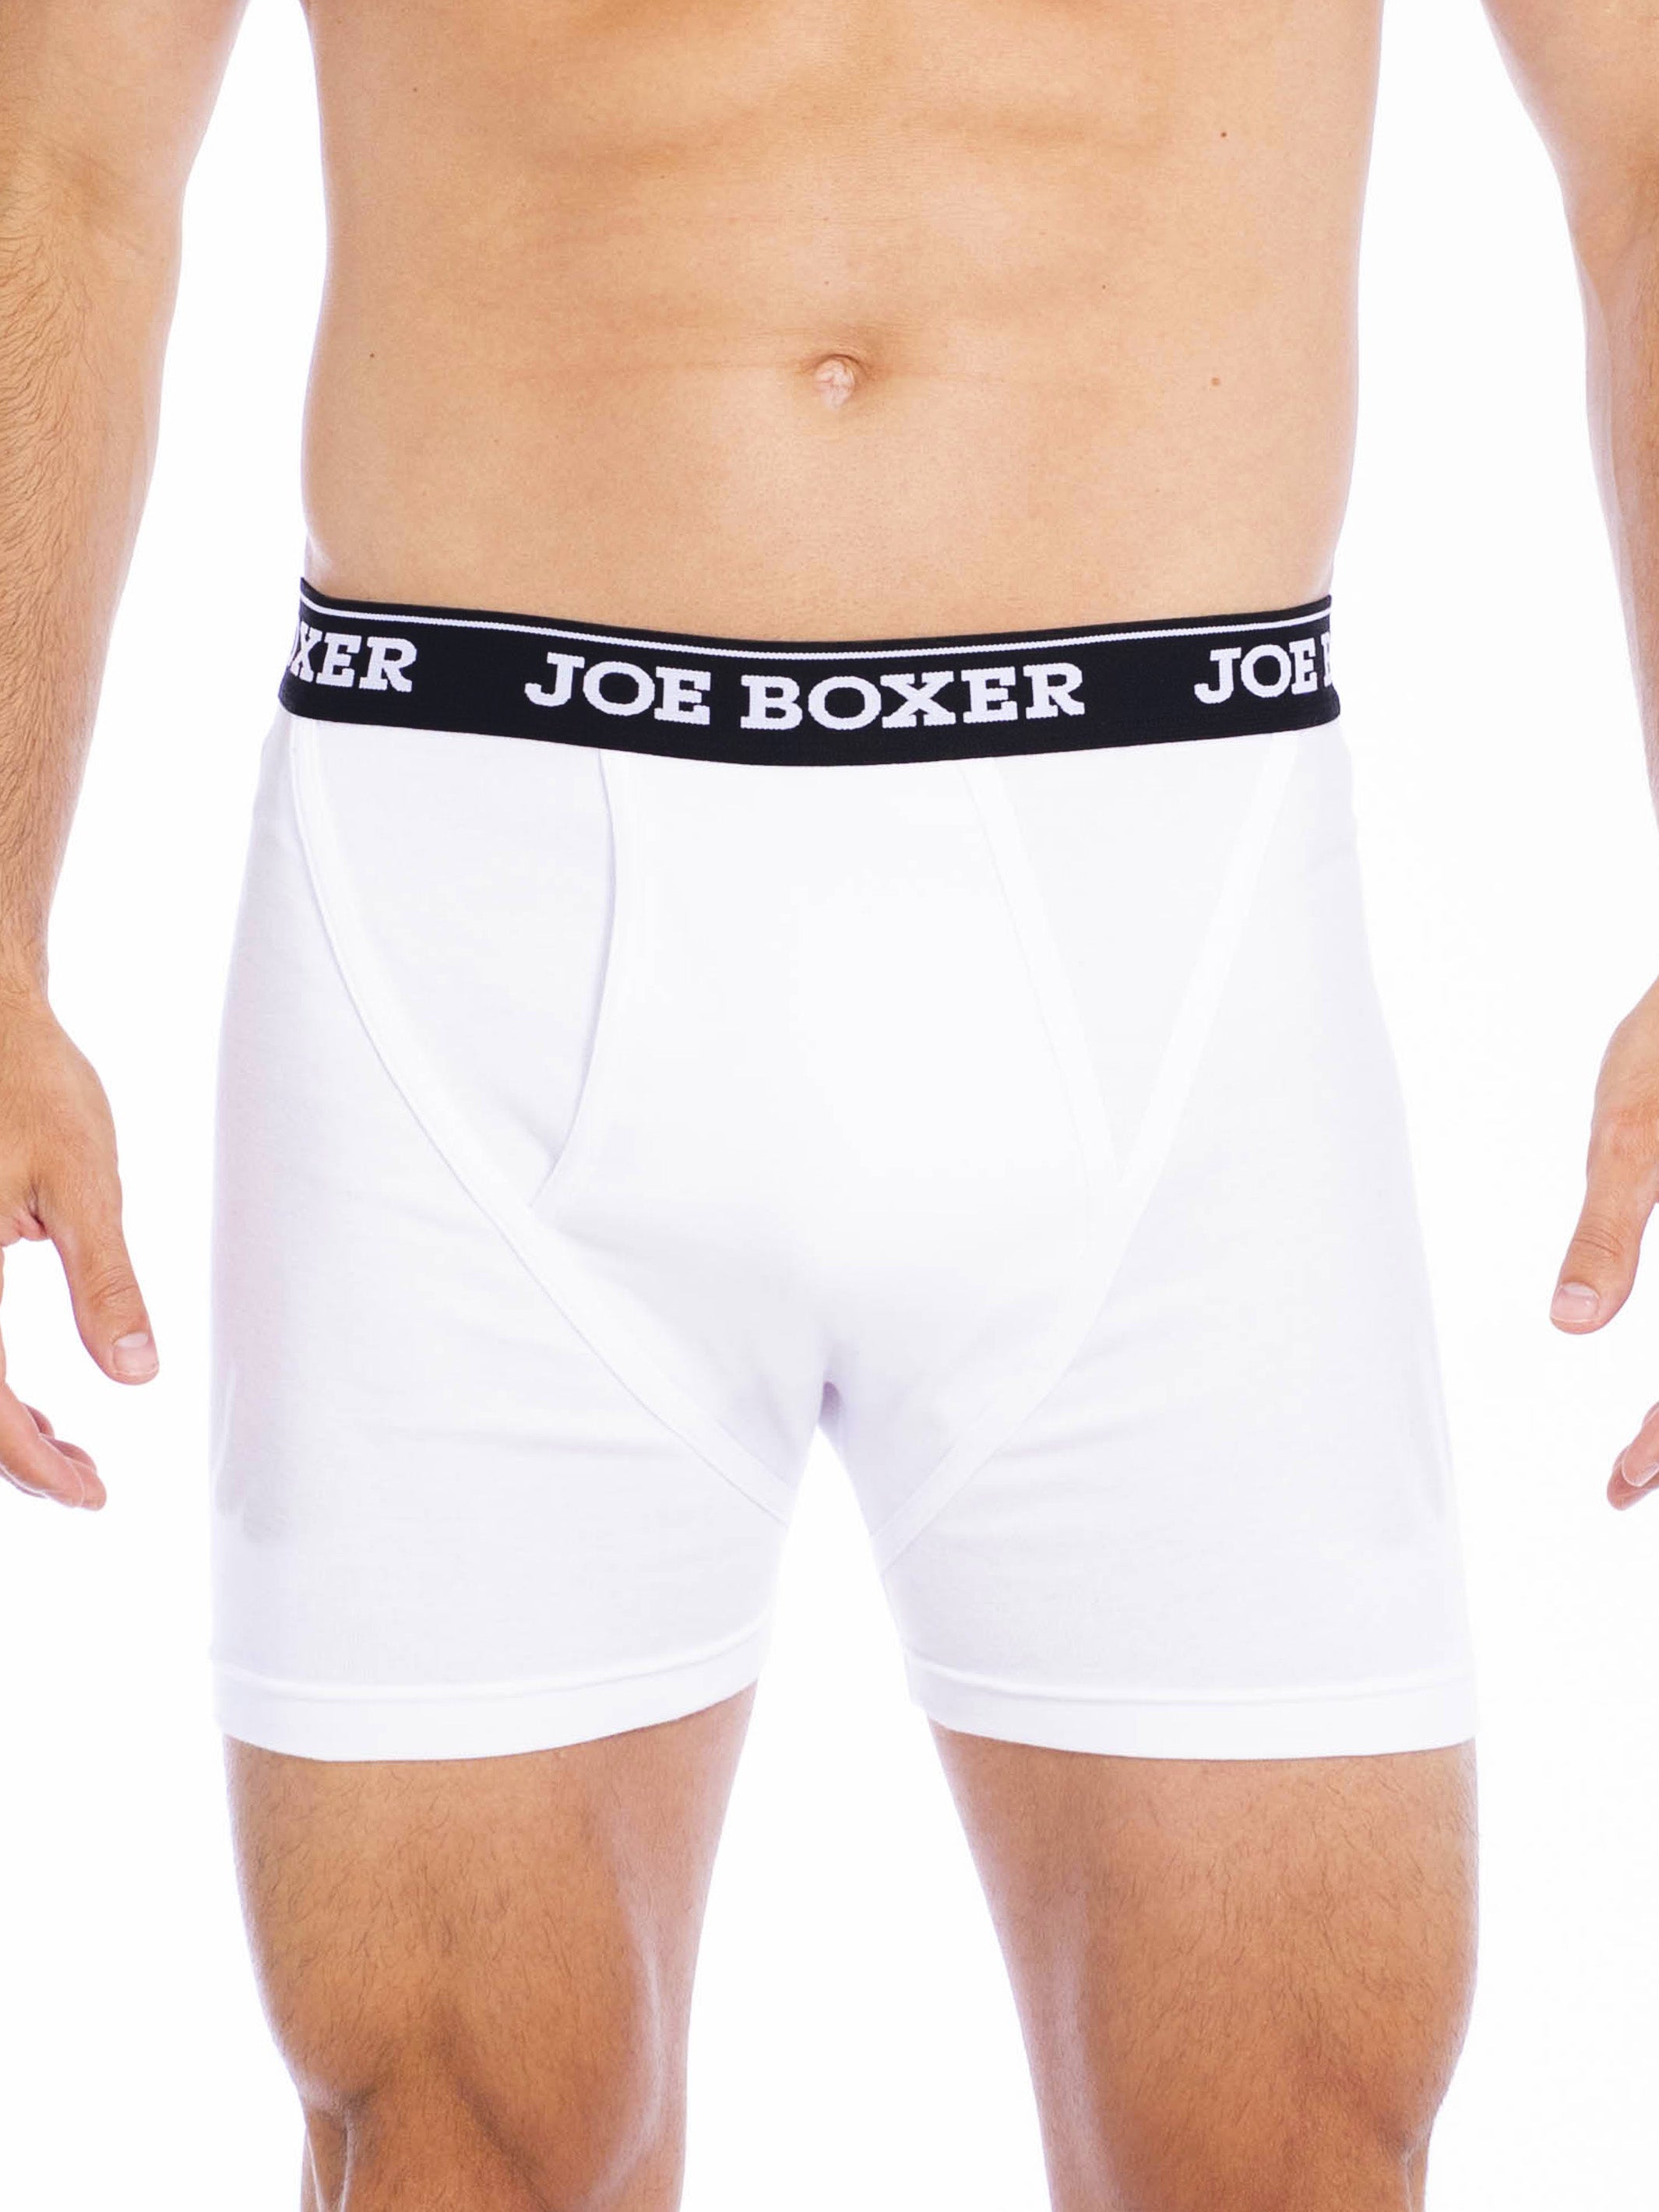 Men's Boxer Briefs